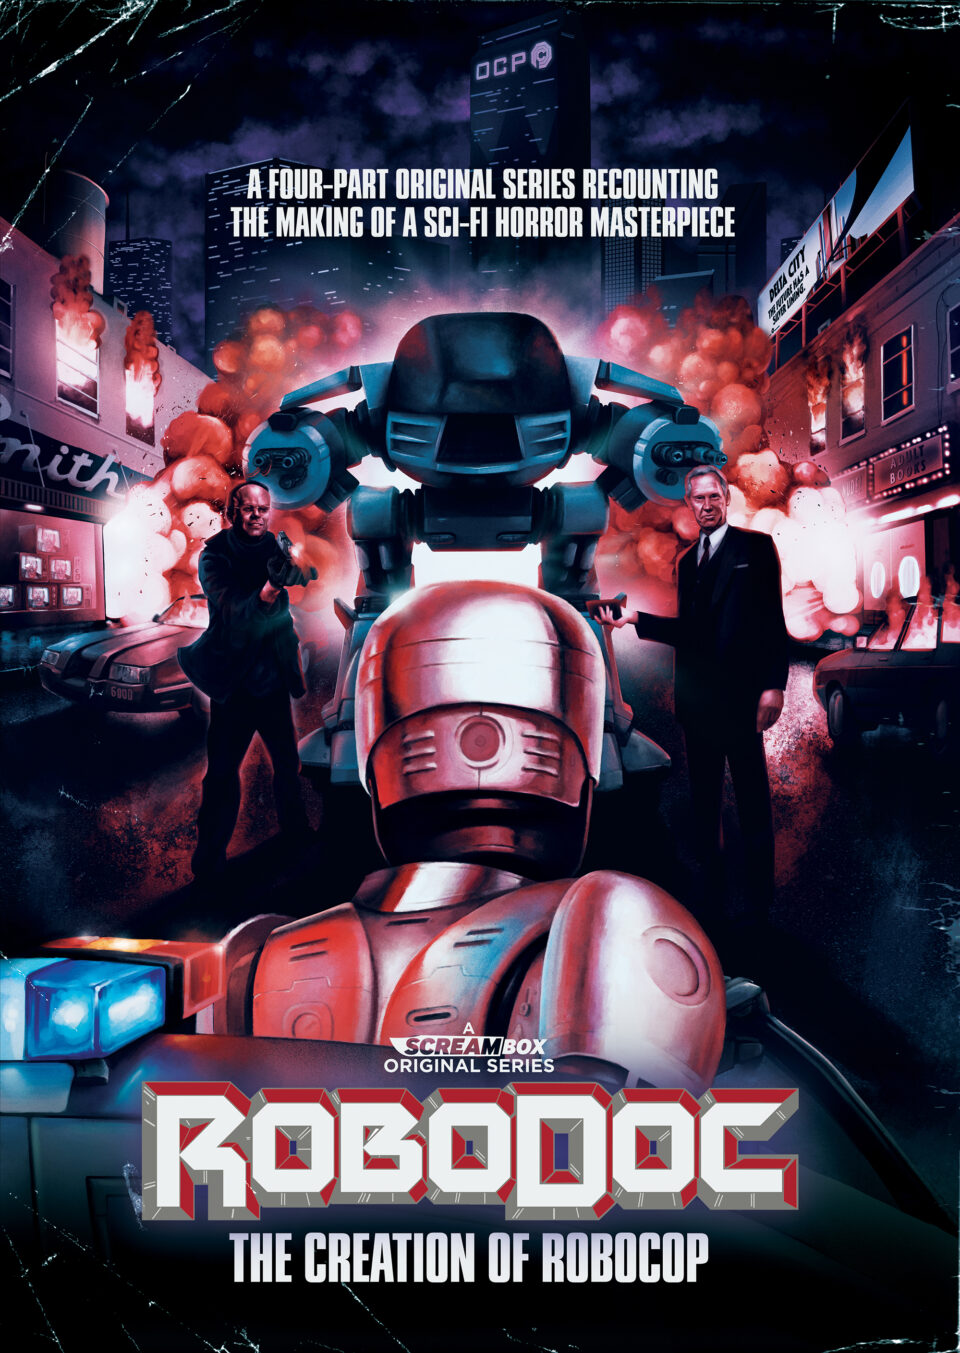 Robodoc Robocop key art